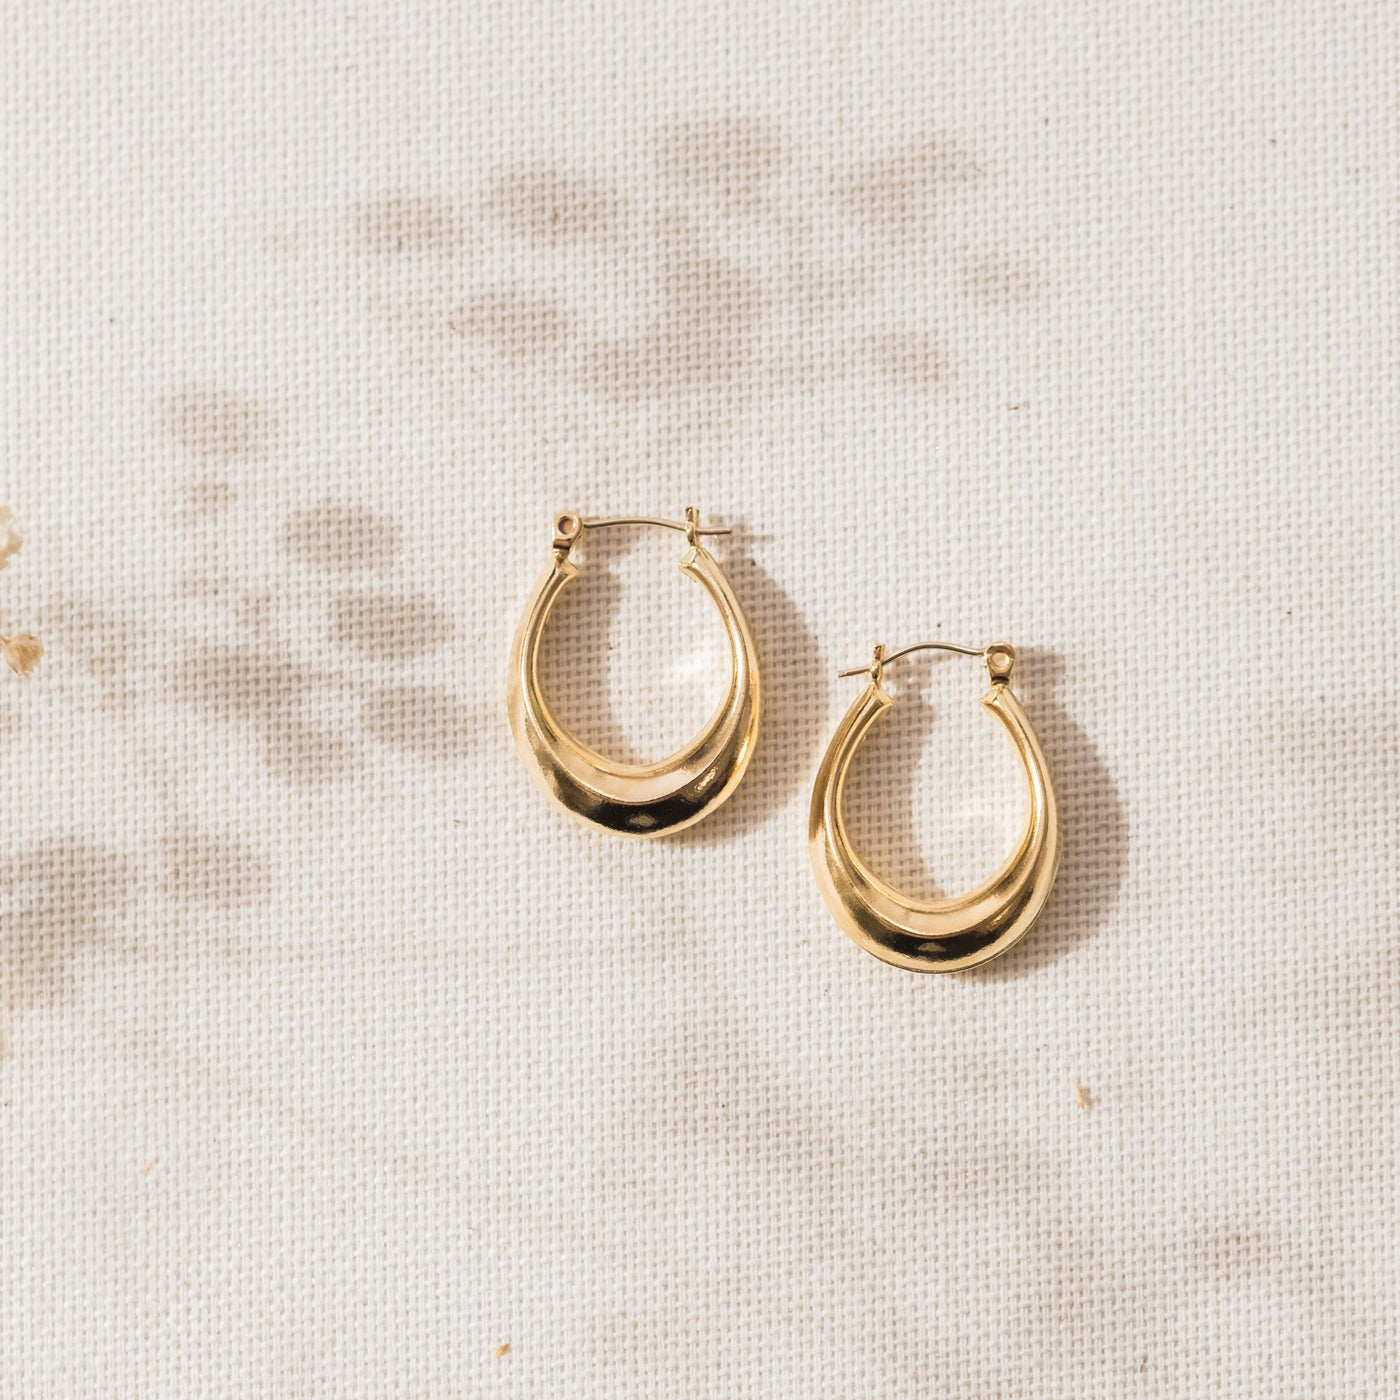 Oval Modern Hoop Earrings | Simple & Dainty Jewelry